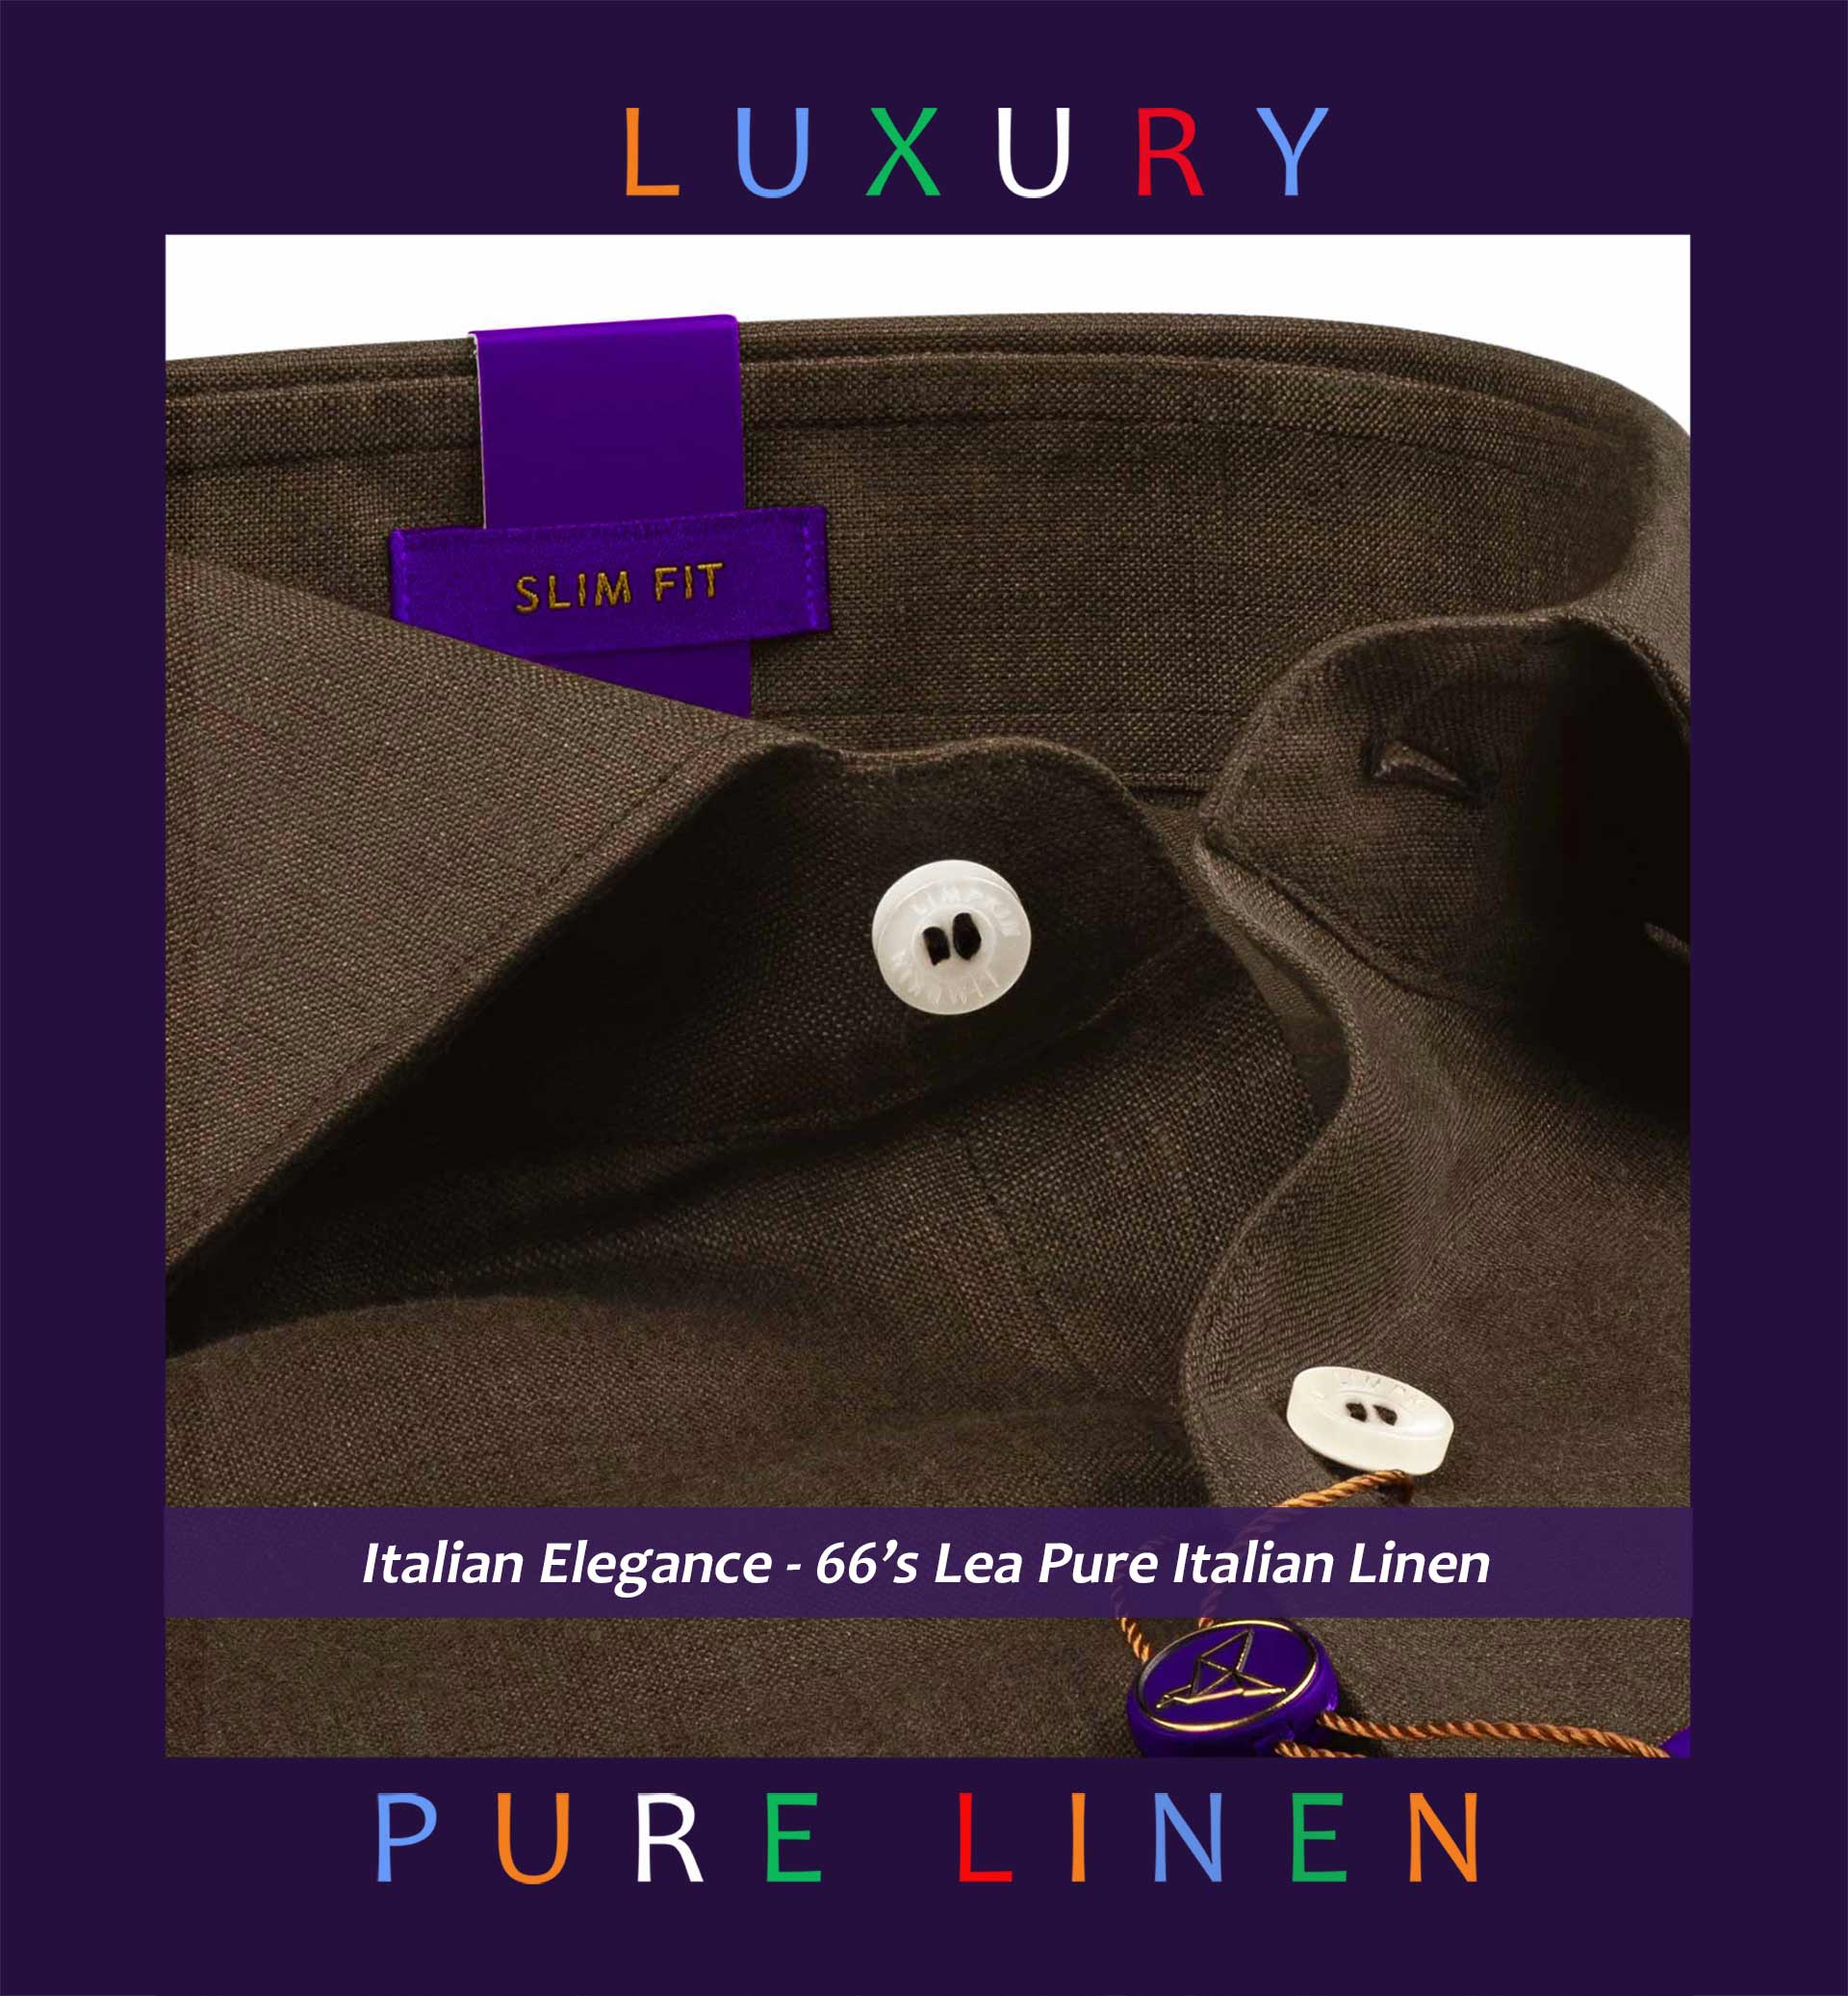 Almeria- Cedar Brown Solid Linen- 66's Lea Pure Italian Linen